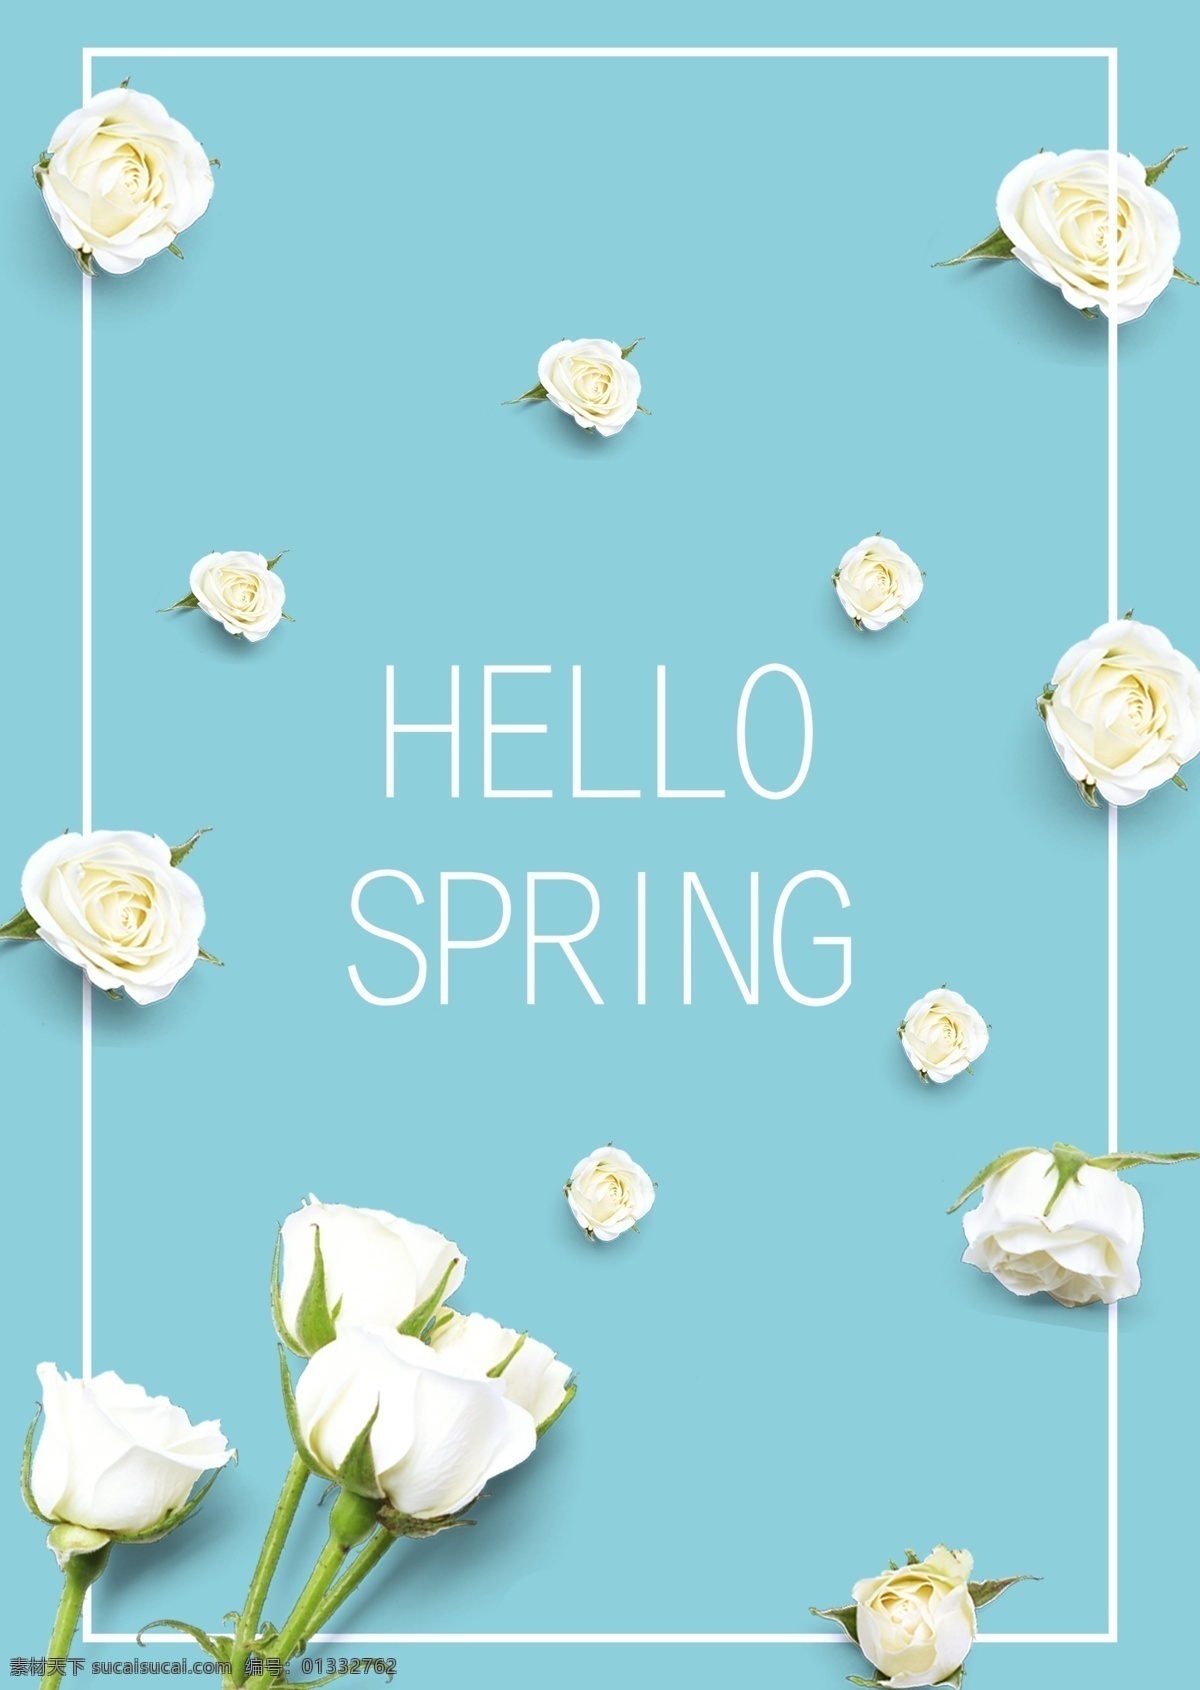 蓝色 唯美 白 玫瑰 春季 促销 海报 白玫瑰 绿叶 鲜花 清新 春日 春天 大自然 打折 降价 绿色